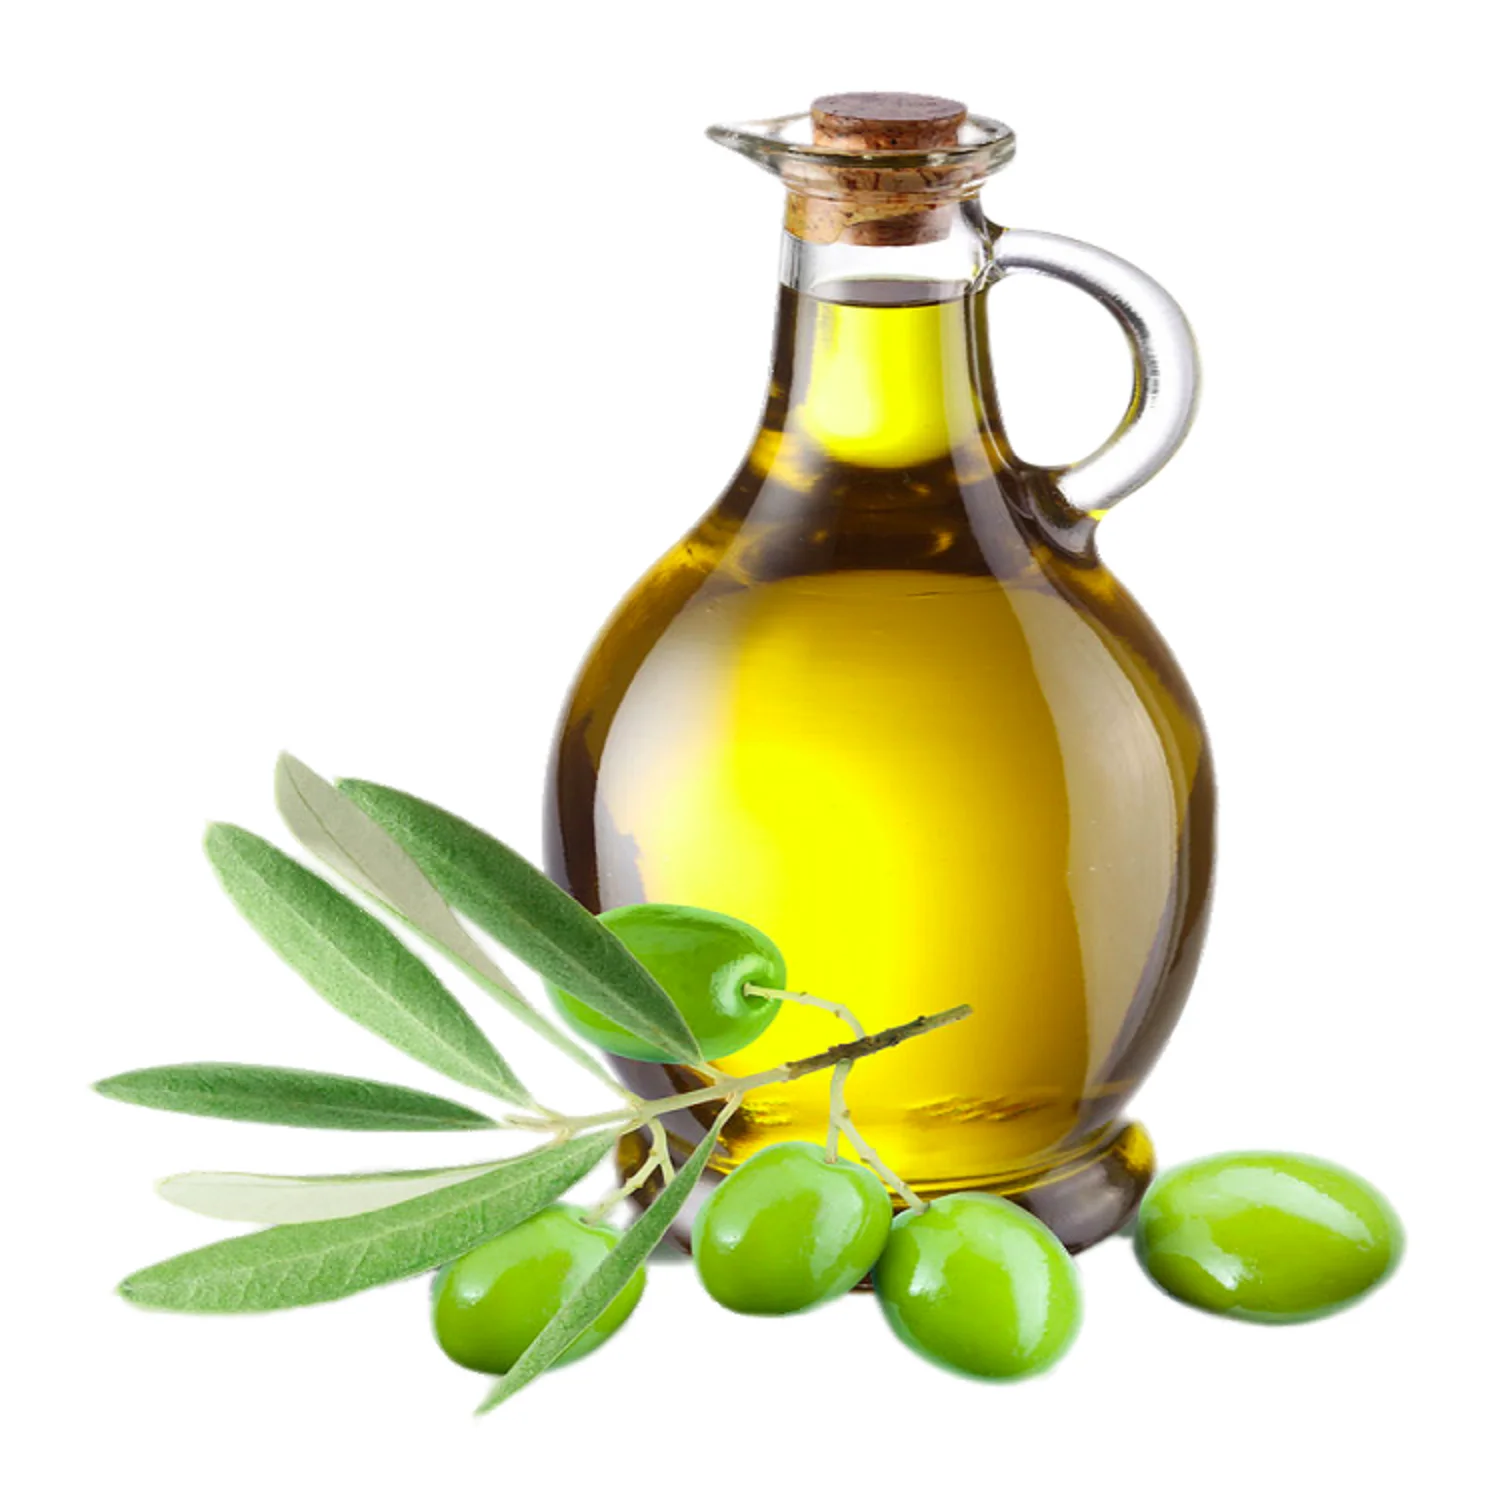 Olive Oil масло оливковое. Олив Ойл масло оливковое. Масло оливковое natural Olive Oil. Масло оливы, жожоба оливы. Оливковое масло высшего качества